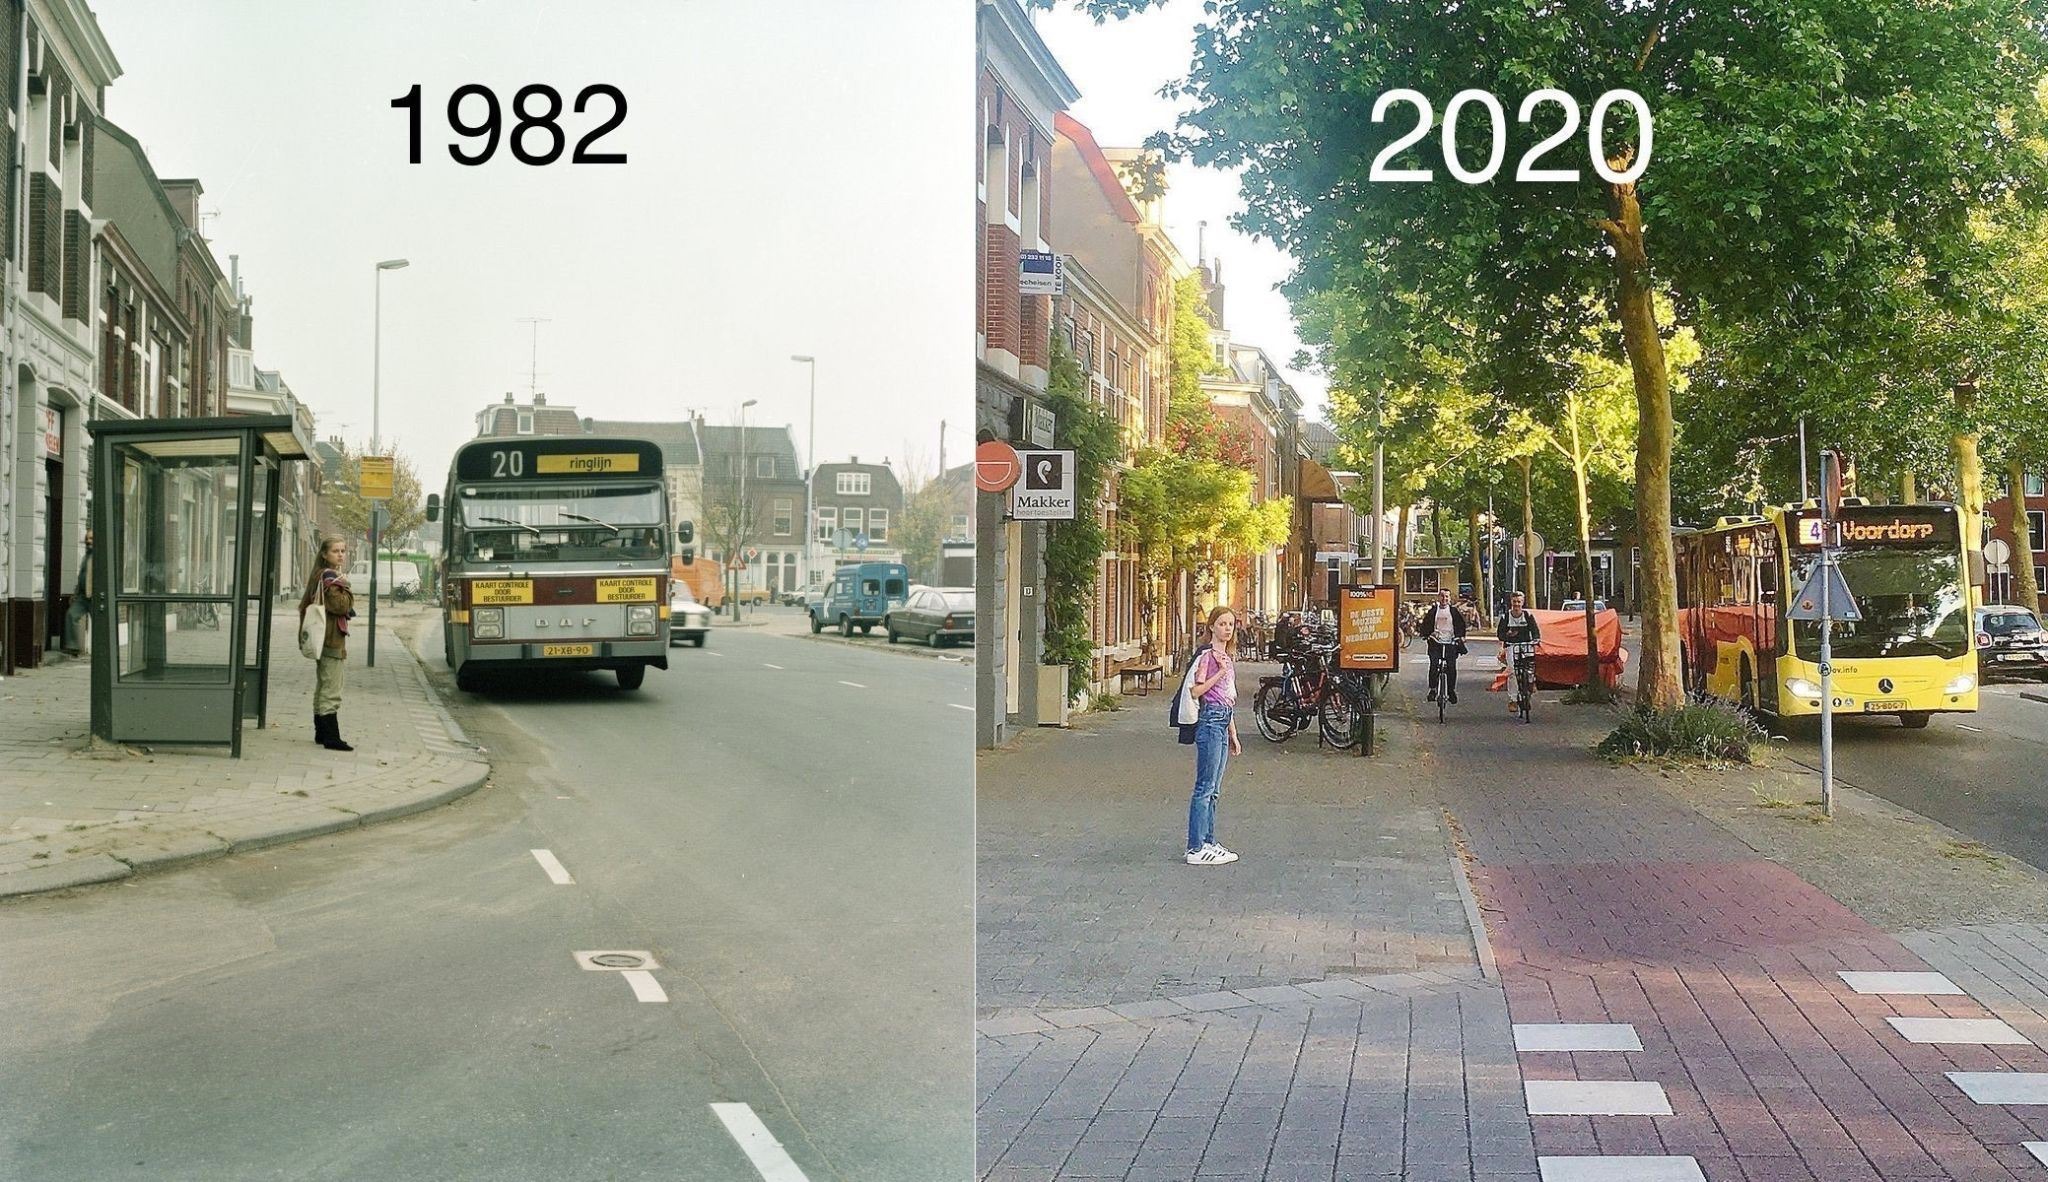 Một con đường ở TP. Utrecht (Hà Lan) cũng bị thu hẹp lại, trồng thêm nhiều cây xanh và dành đường cho người đi bộ, xe đạp.